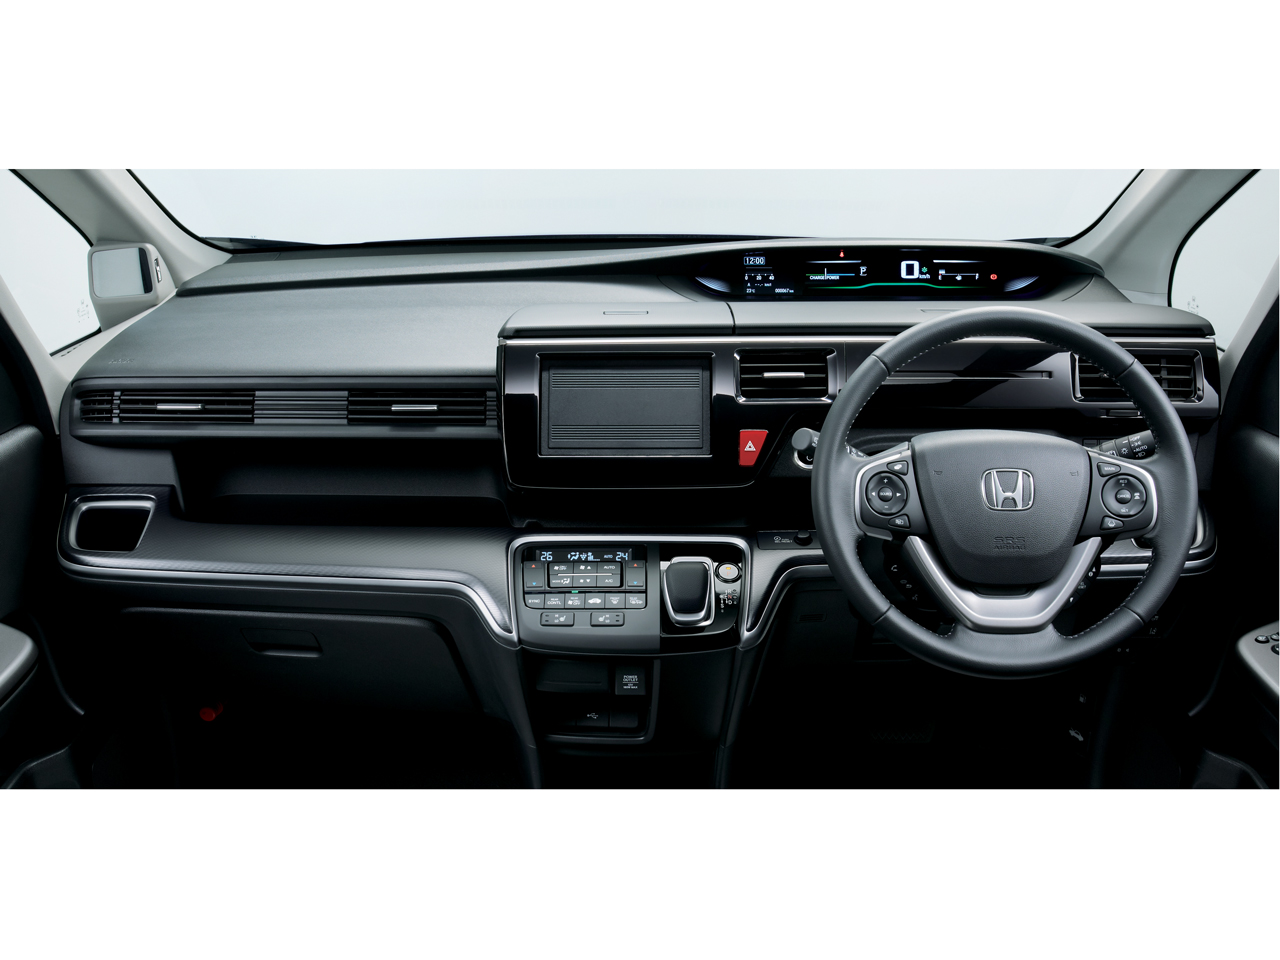 ホンダ ステップワゴン スパーダ ハイブリッド 17年モデル Hybrid G Ex Honda Sensing 価格 性能 装備 オプション 17年9月29日発売 価格 Com